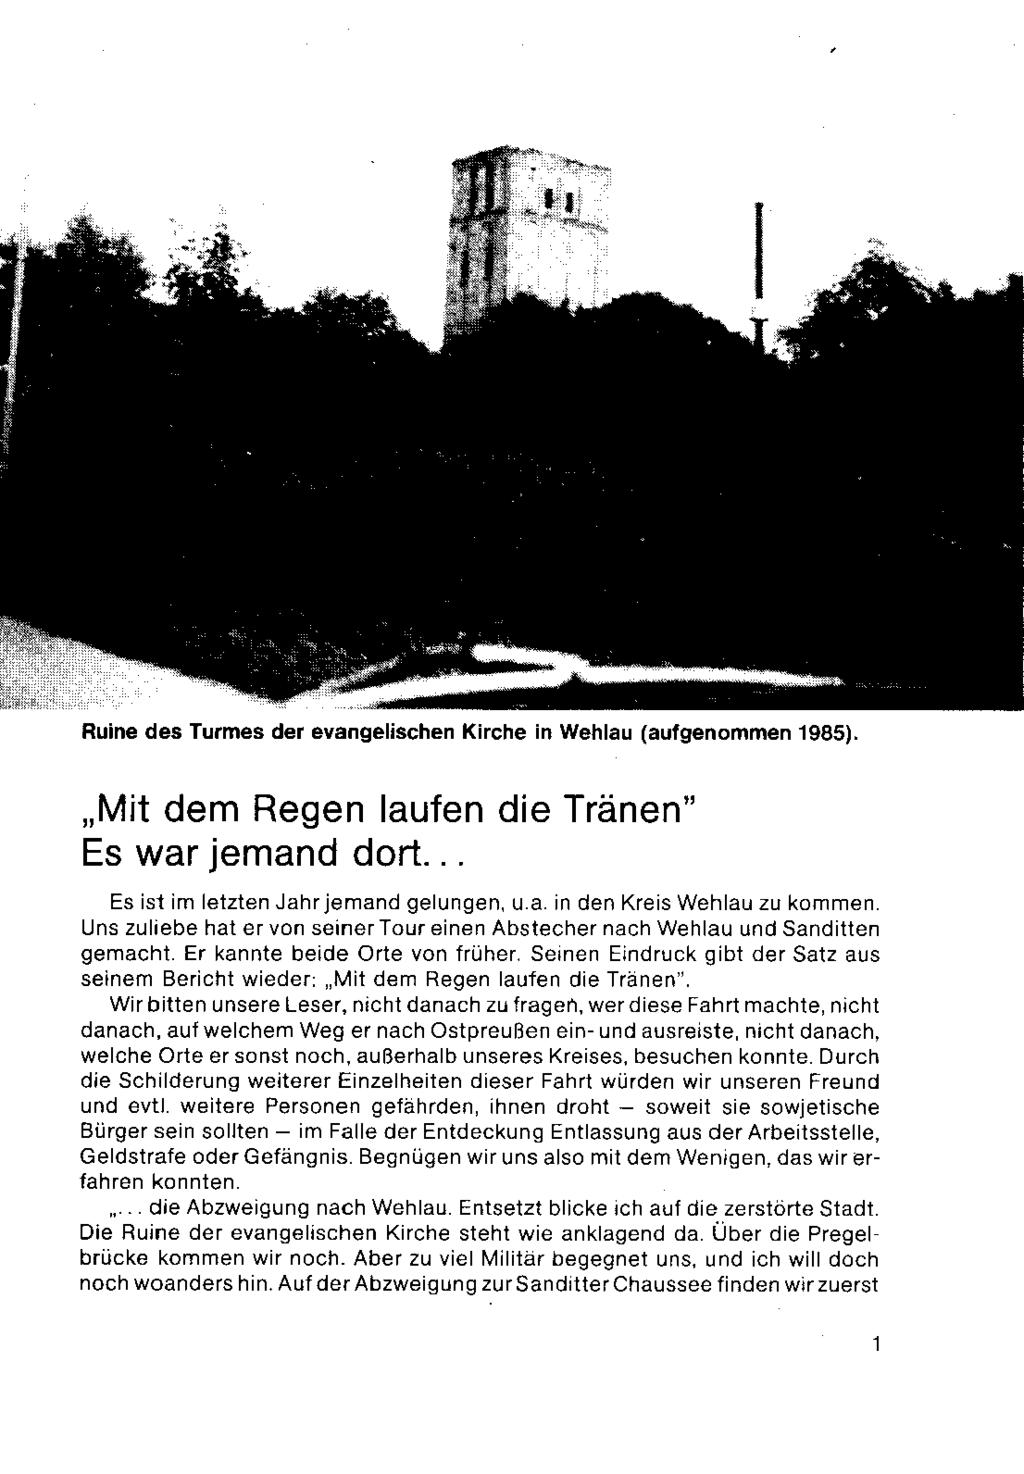 Ruine des Turmes der evangelischen Kirche in Wehlau (aufgenommen 1985). Mit dem Regen laufen die Tränen" Es war jemand dort... Es ist im letzten Jahrjemand gelungen, u a in den Kreis Wehlau zu kommen.